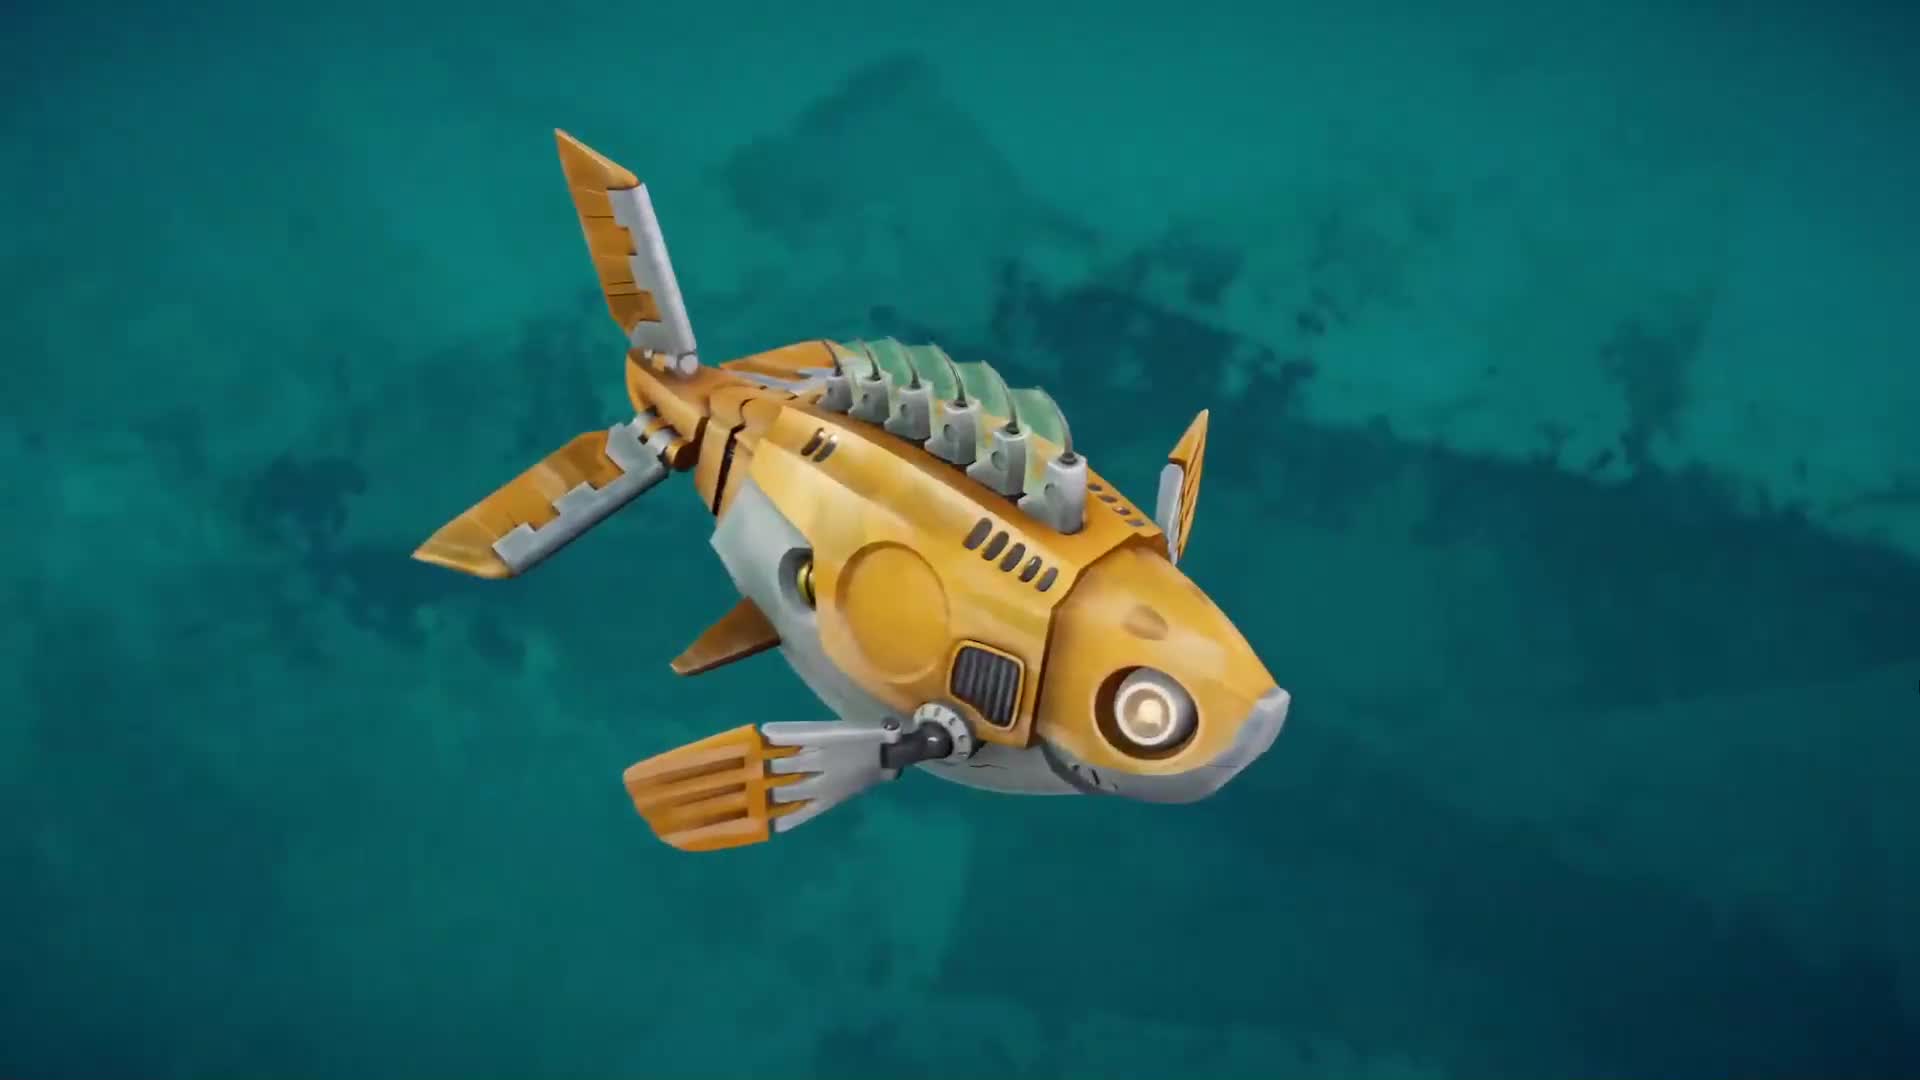 ArtStation - Robot fish